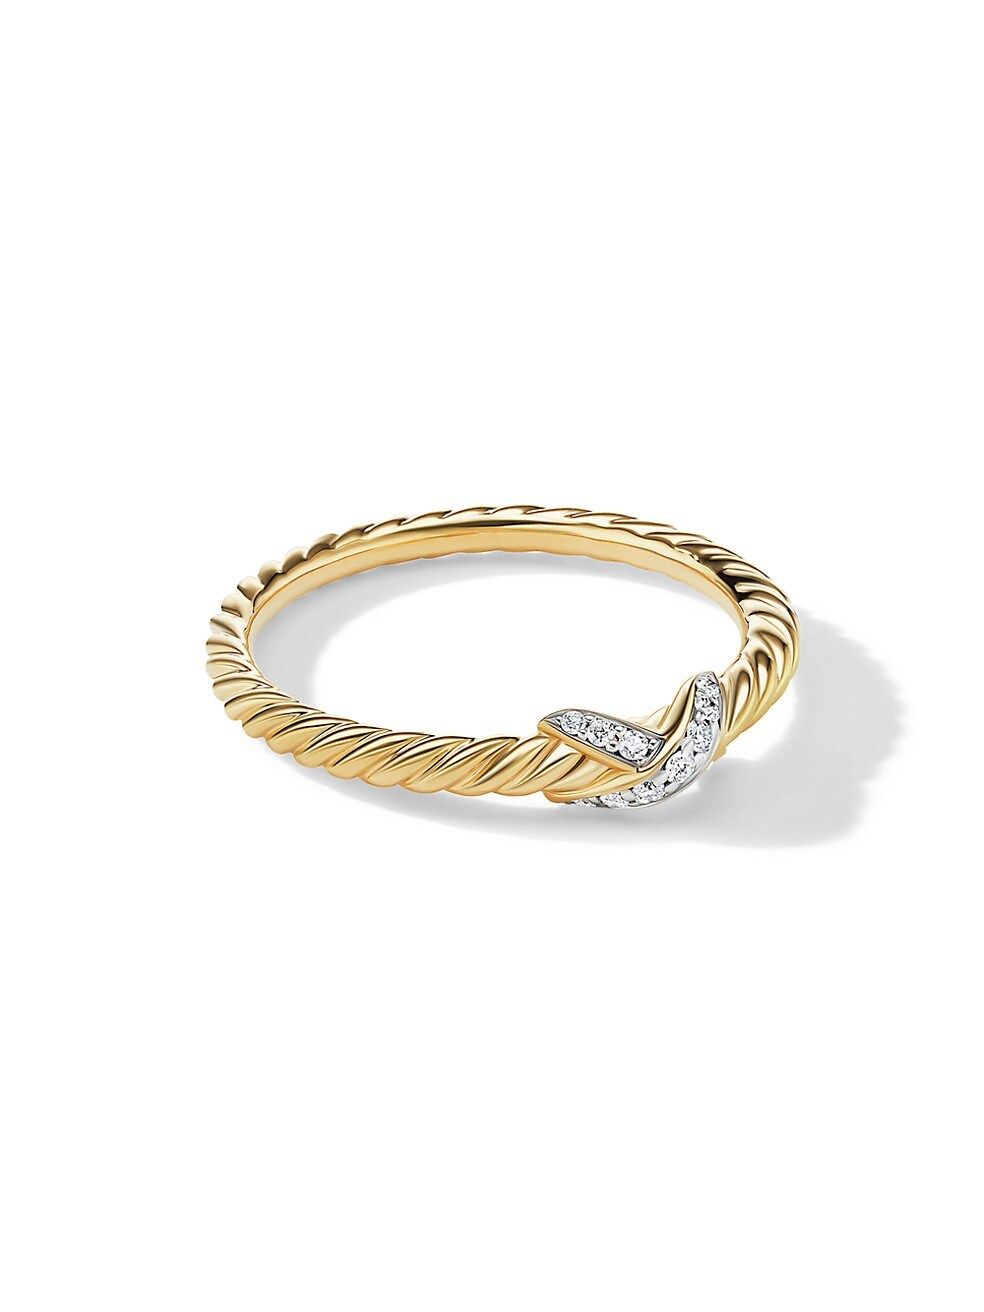 X Petite 18K Gold & Pavé Diamond Ring | Saks Fifth Avenue